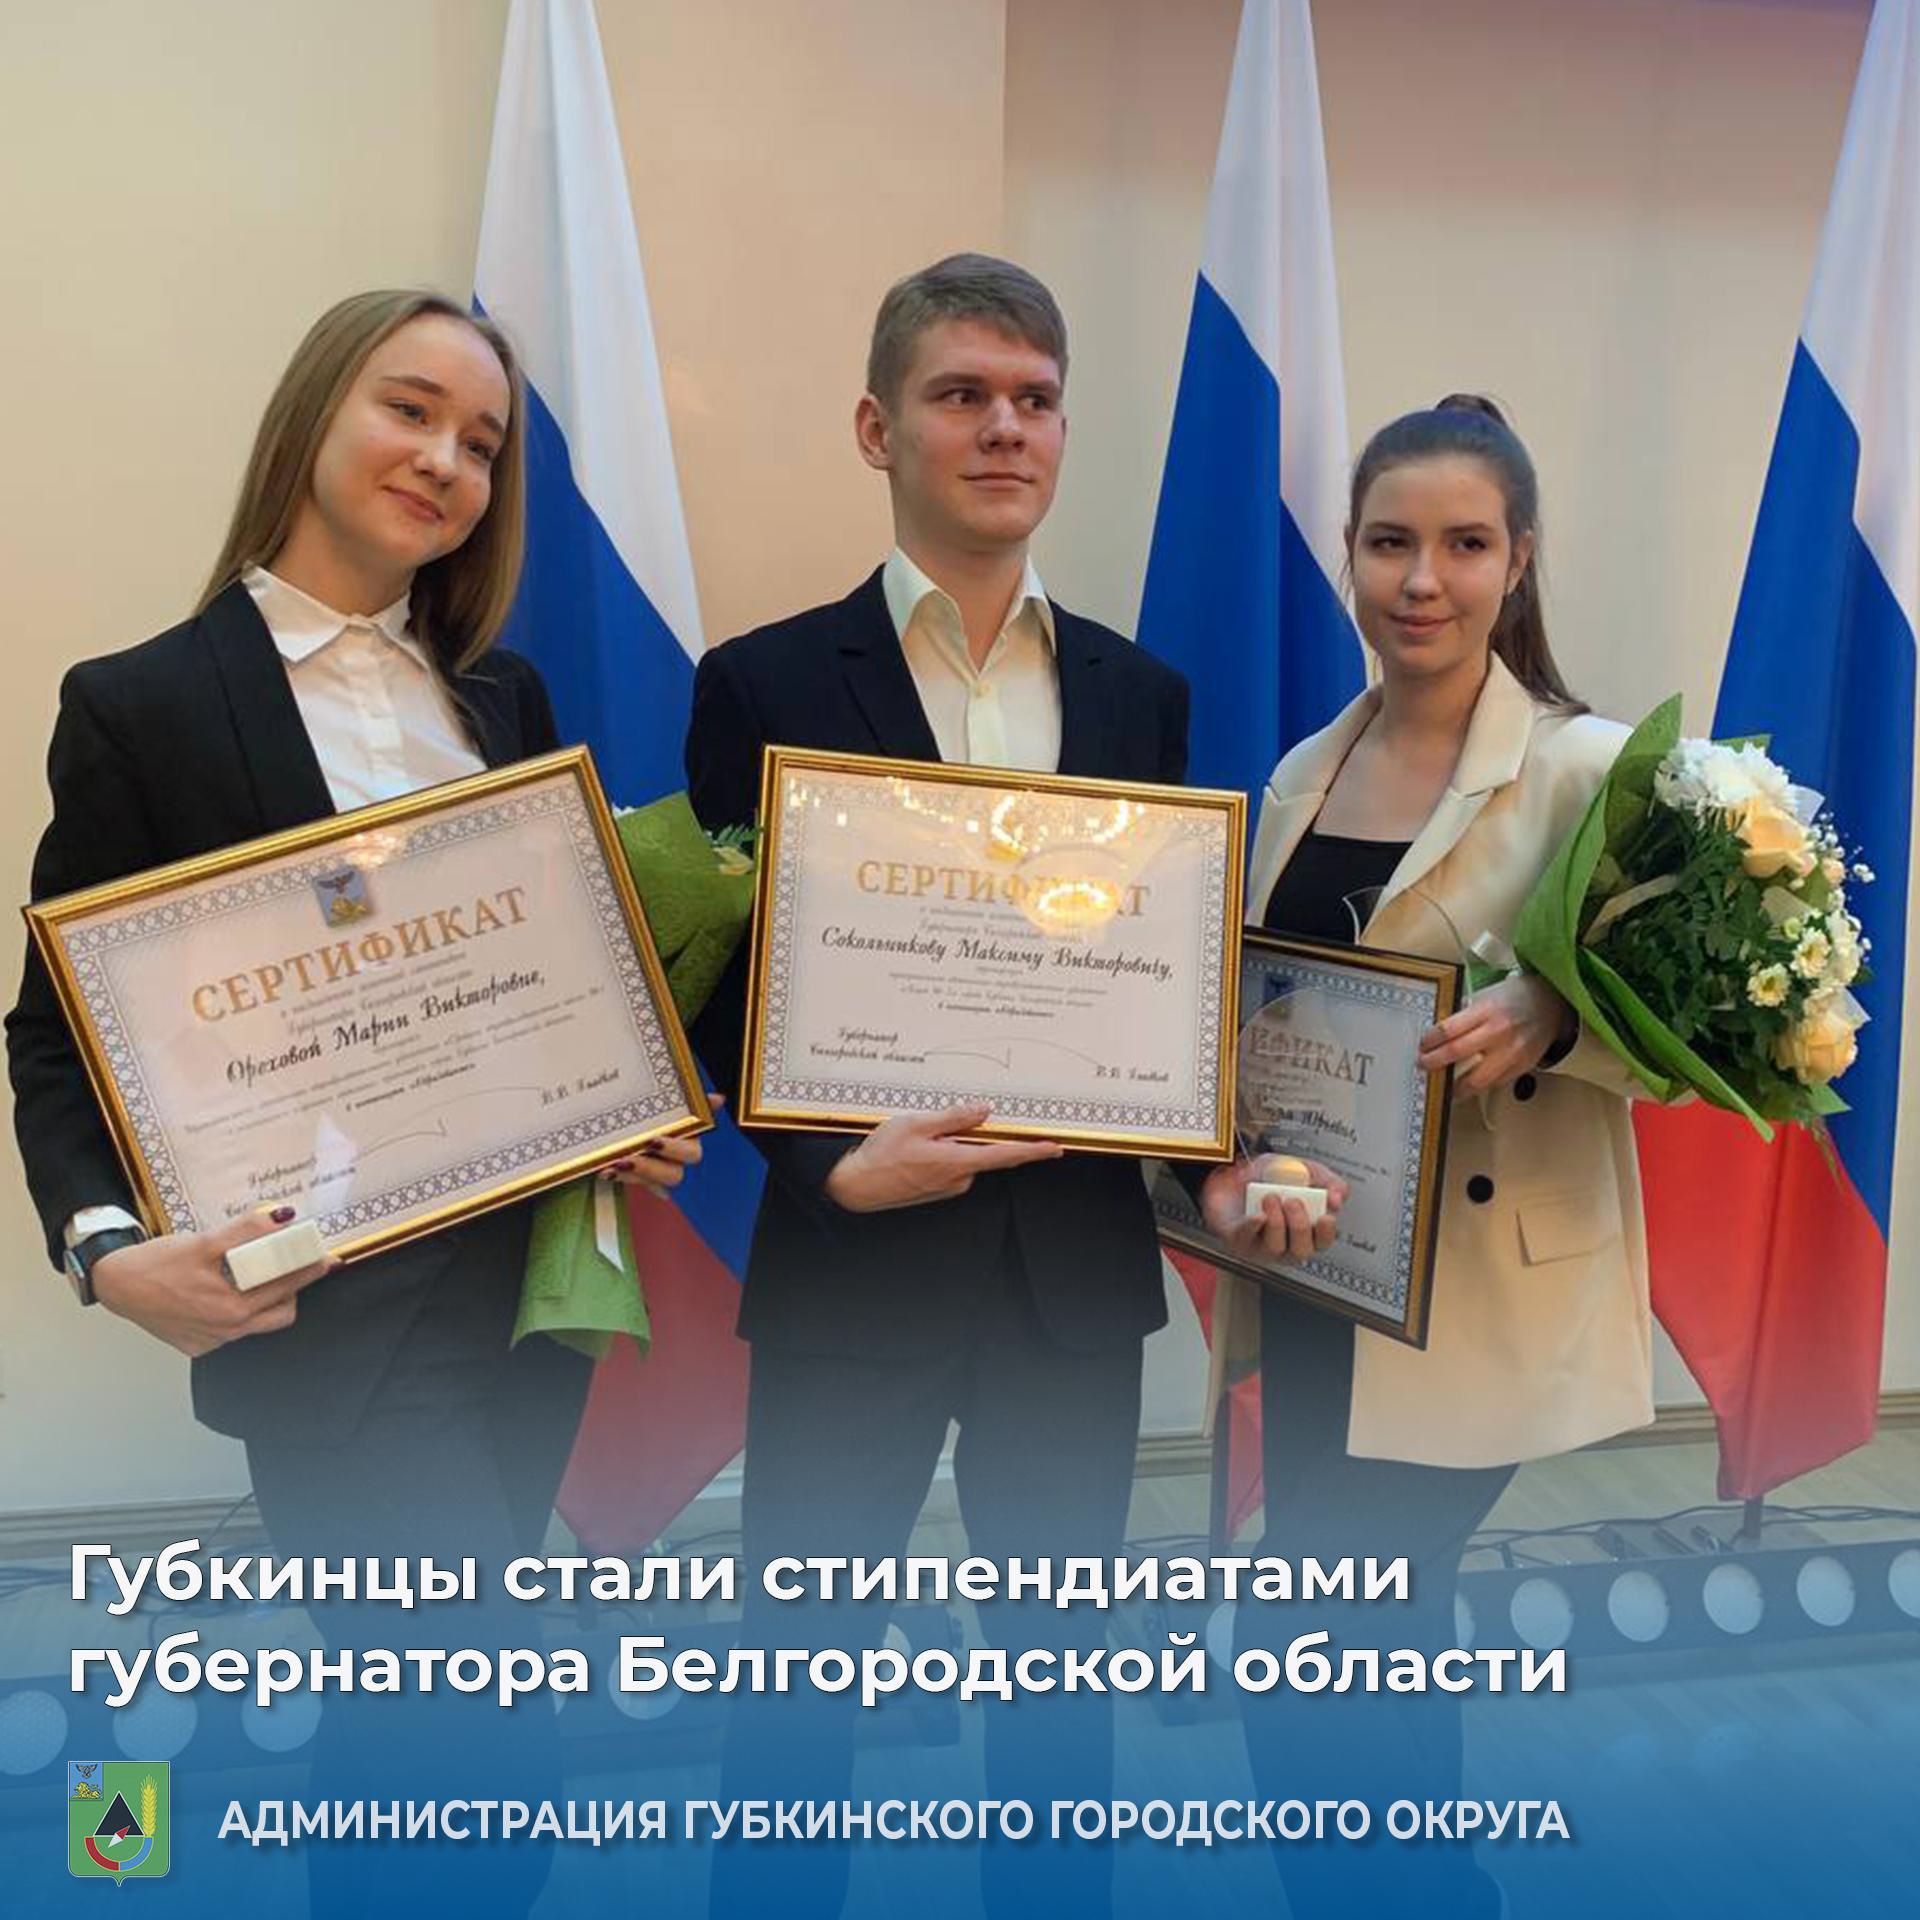 Губкинцы стали стипендиатами губернатора Белгородской области!